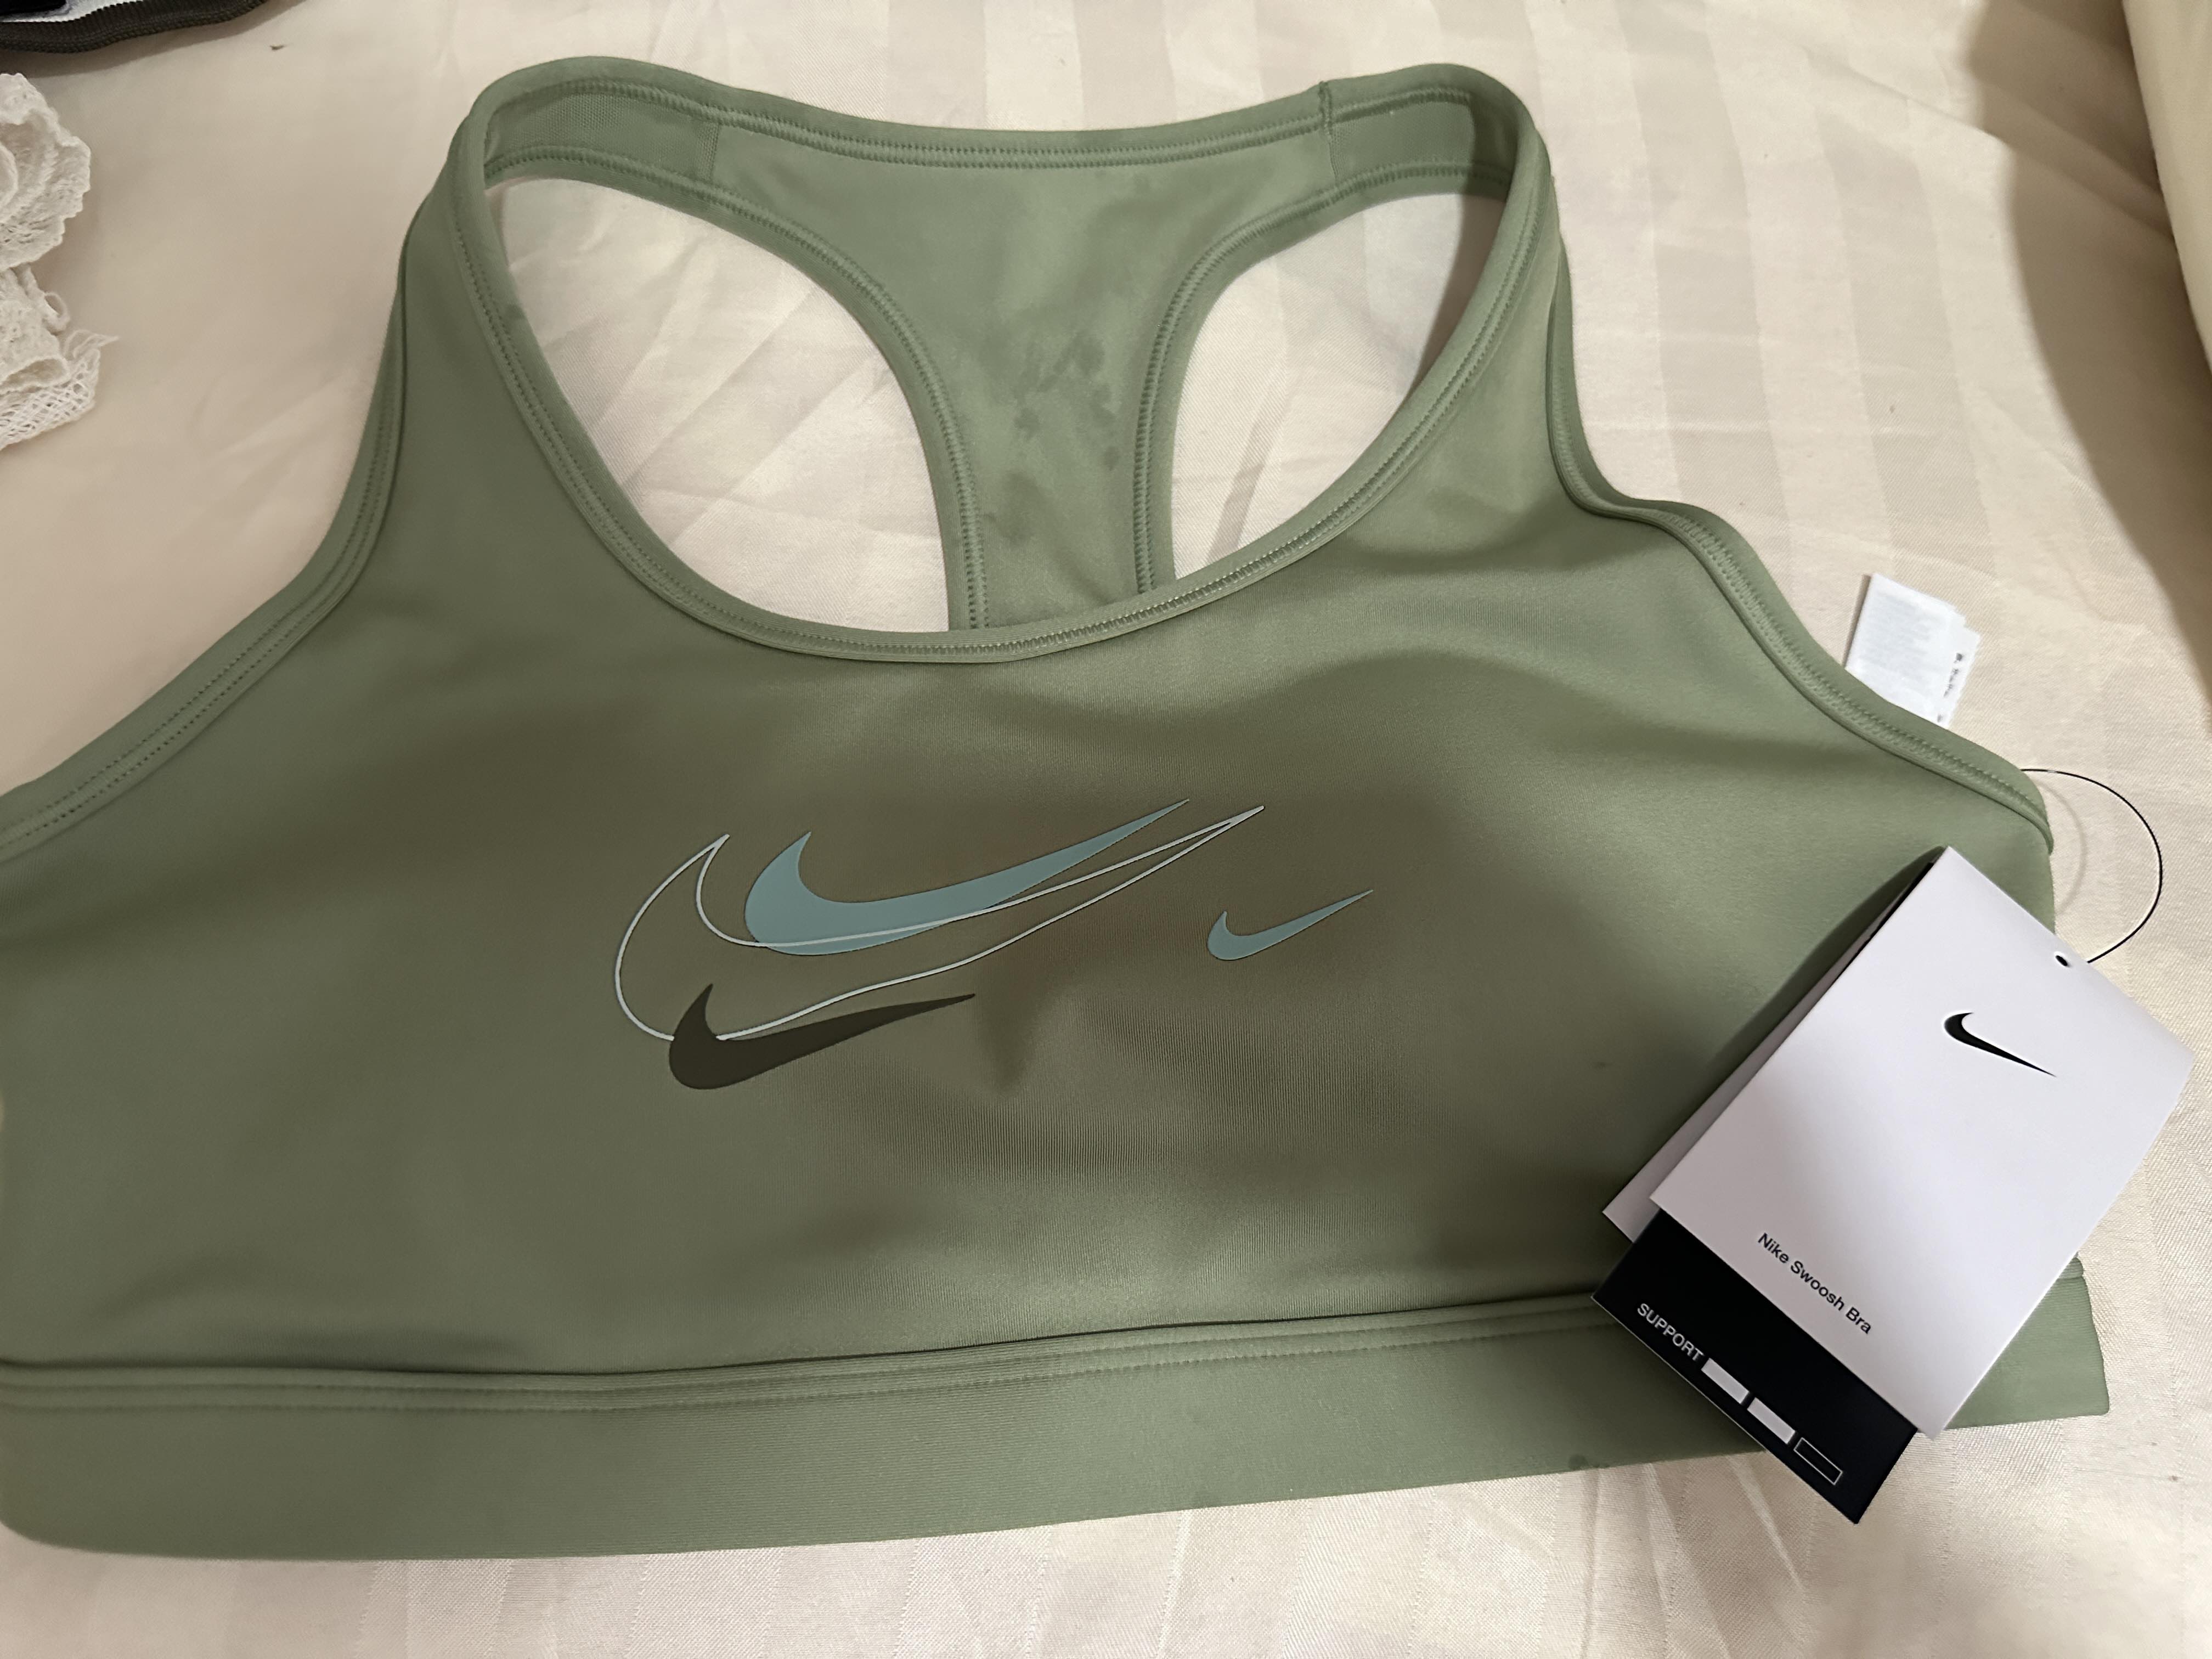 Nike Women's Swoosh Medium-Support Padded Sports Bra - Luminous